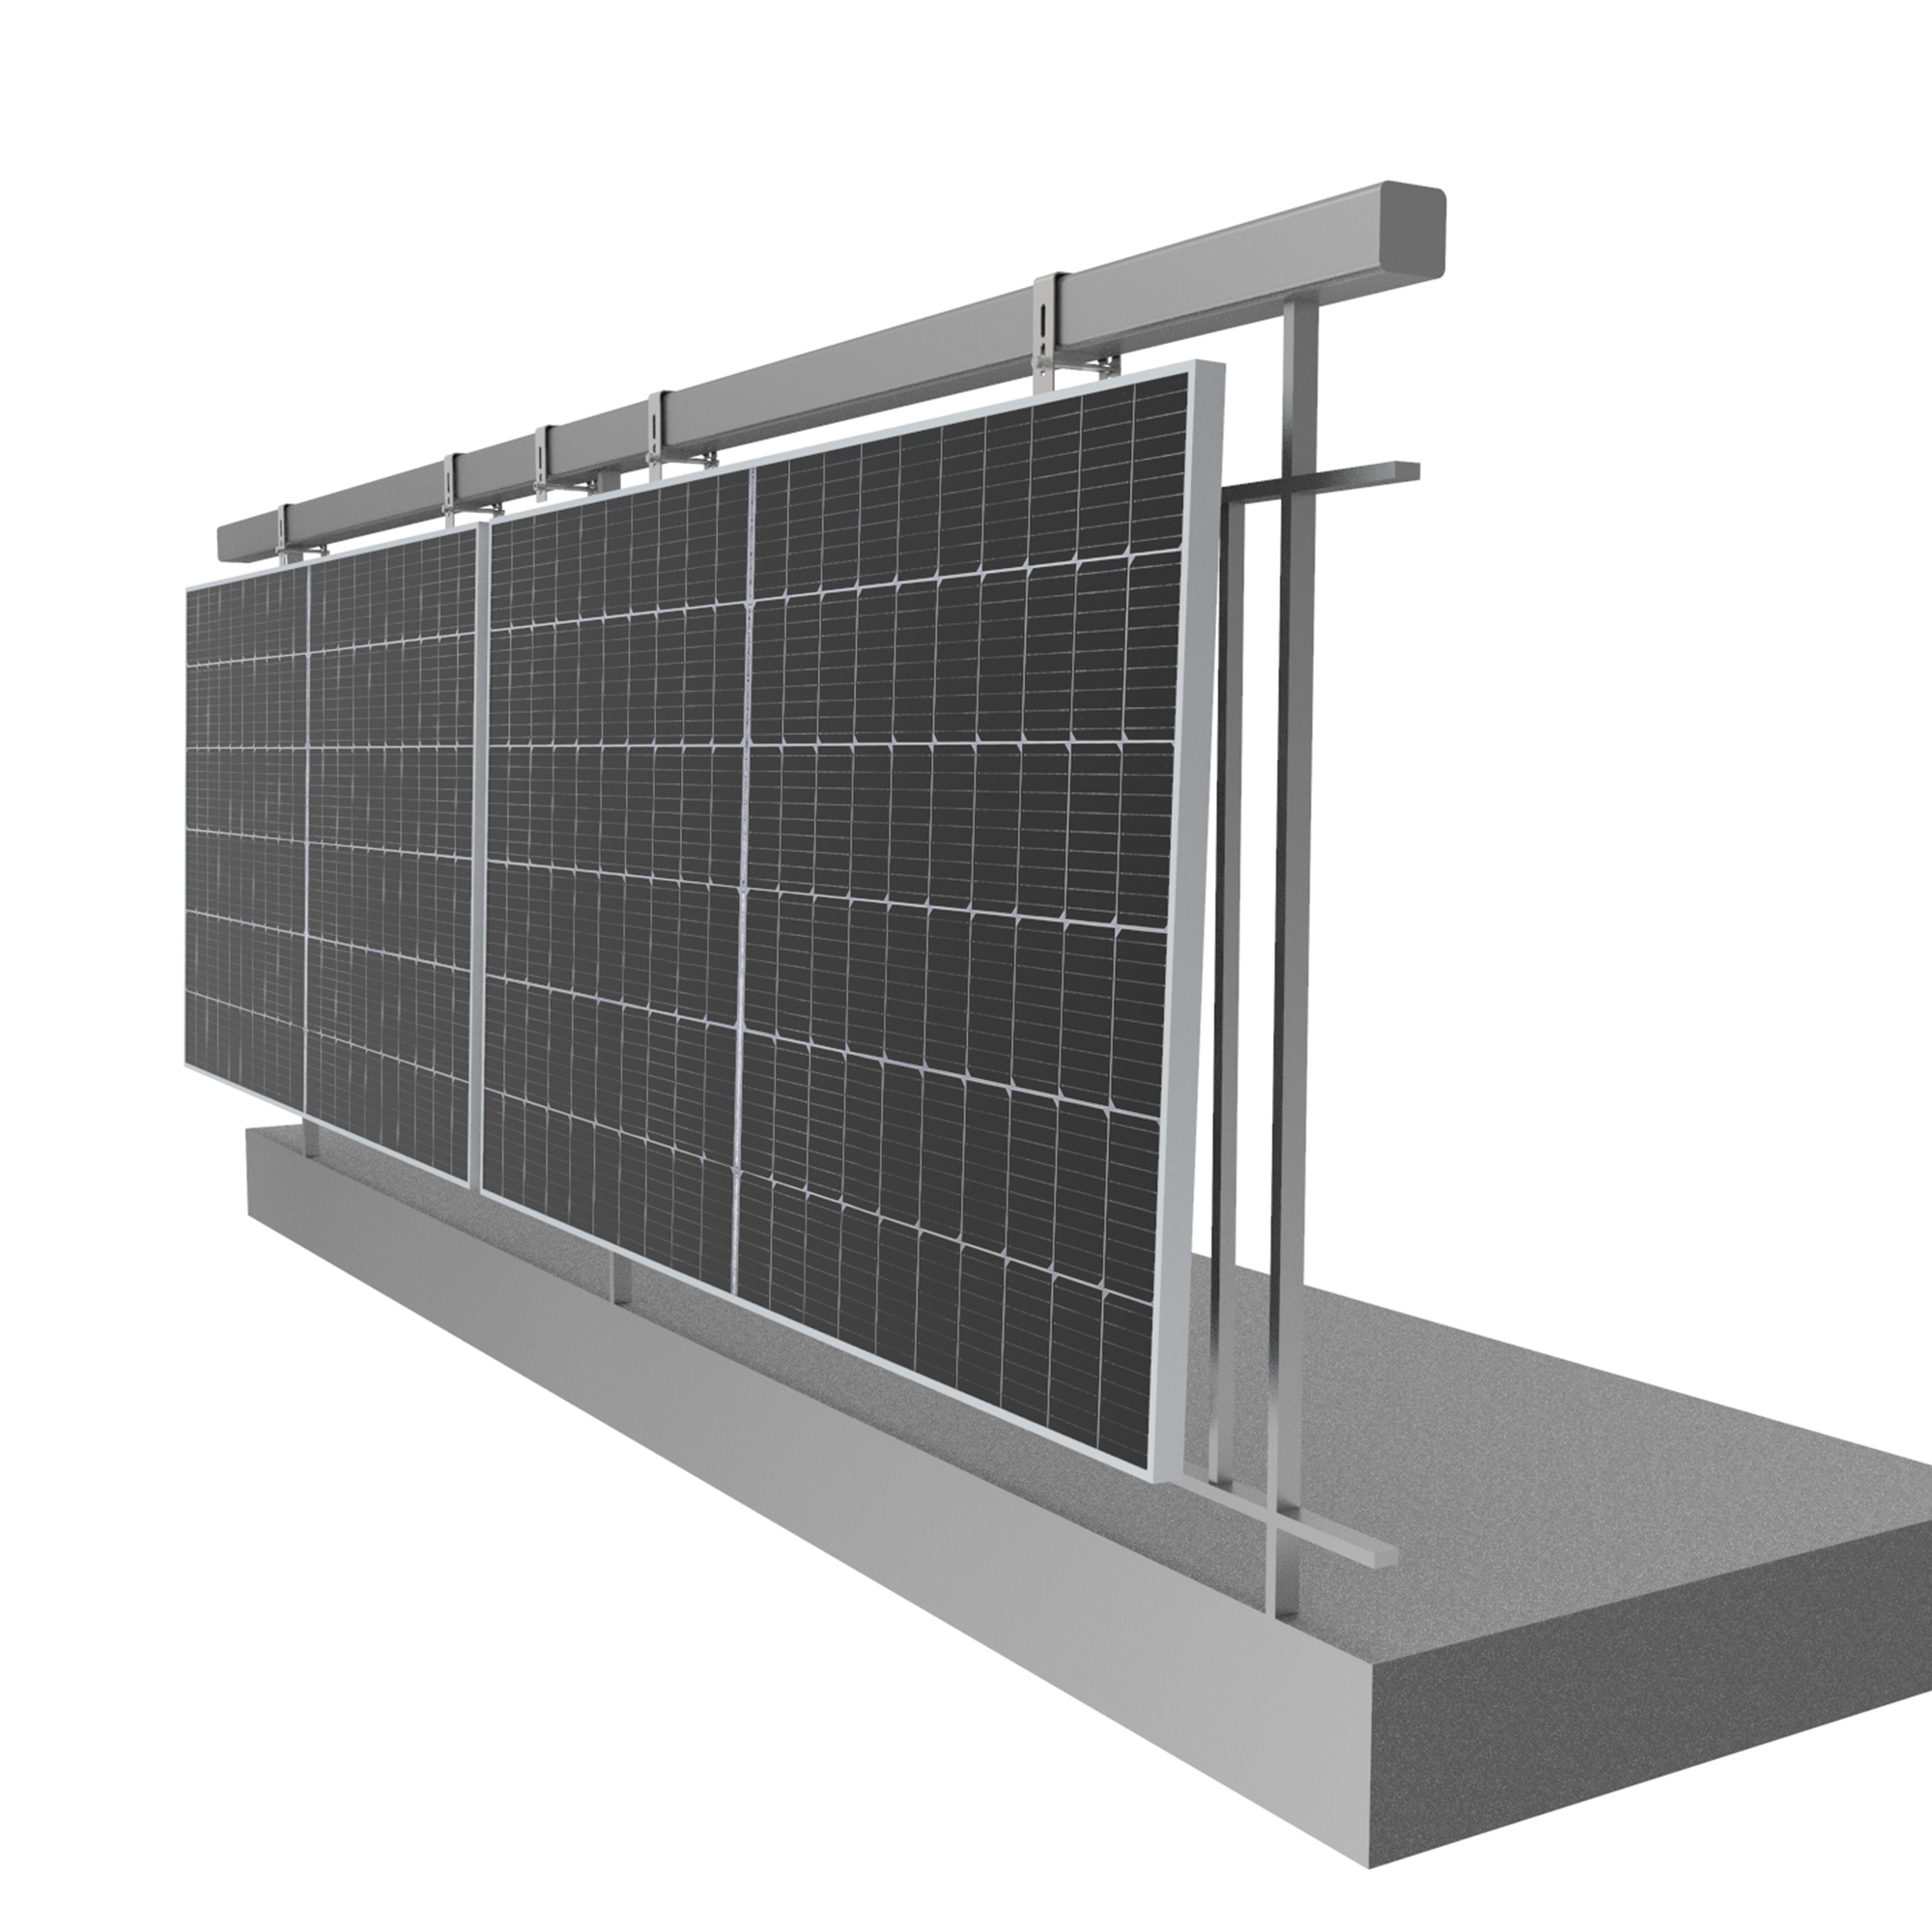 2 Solarmodule Balkonkraftwerkhalterung Photovoltaik, NUASOL Geländer Silber Befestigung